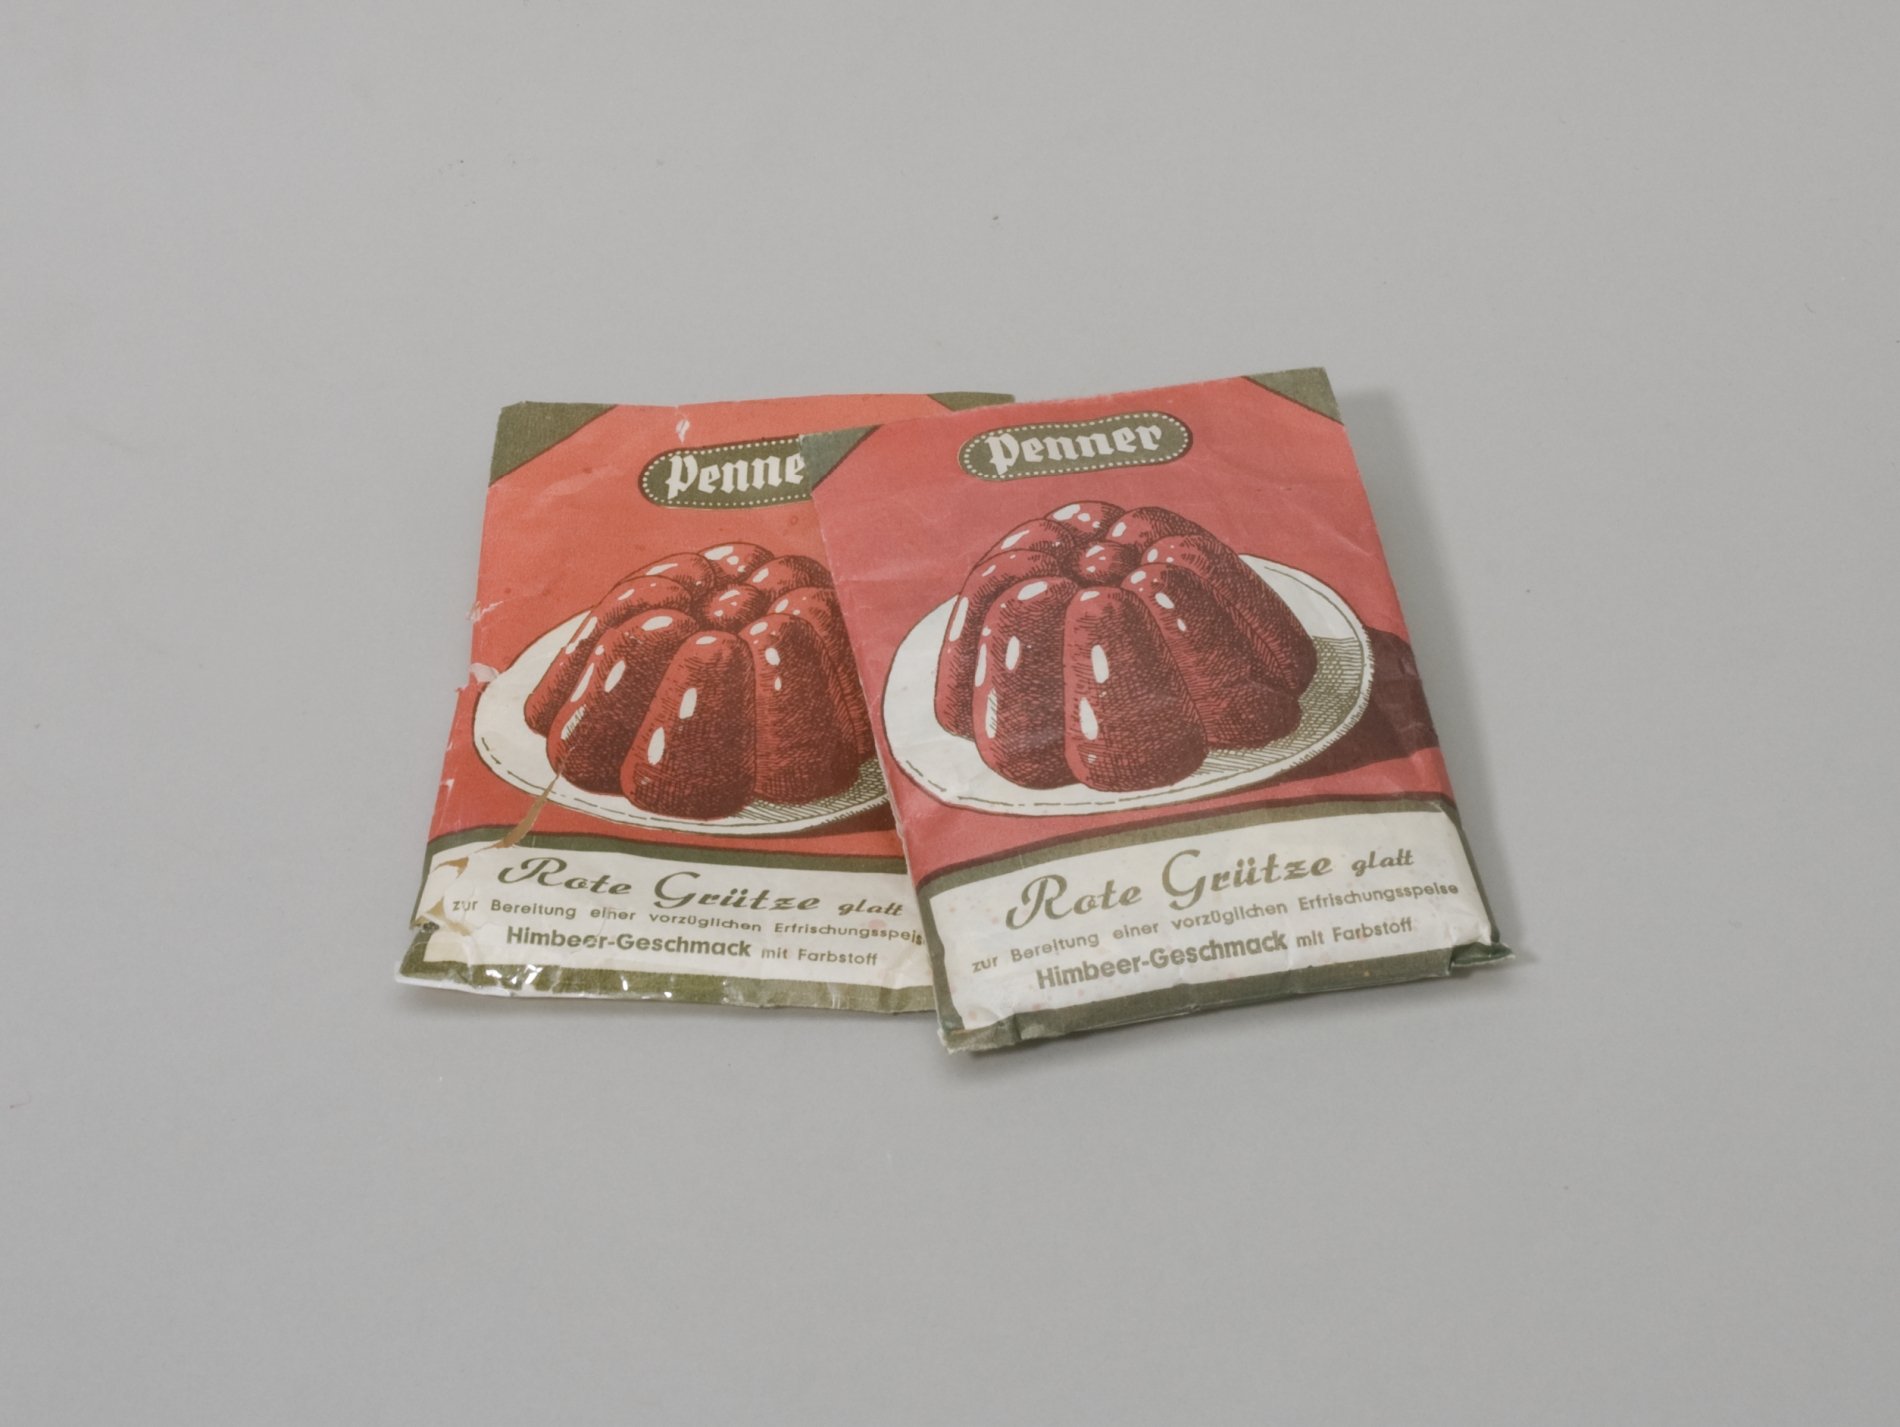 Zwei Verpackungen "Rote Grütze" der Firma "Penner" (Stiftung Domäne Dahlem - Landgut und Museum, Weiternutzung nur mit Genehmigung des Museums CC BY-NC-SA)